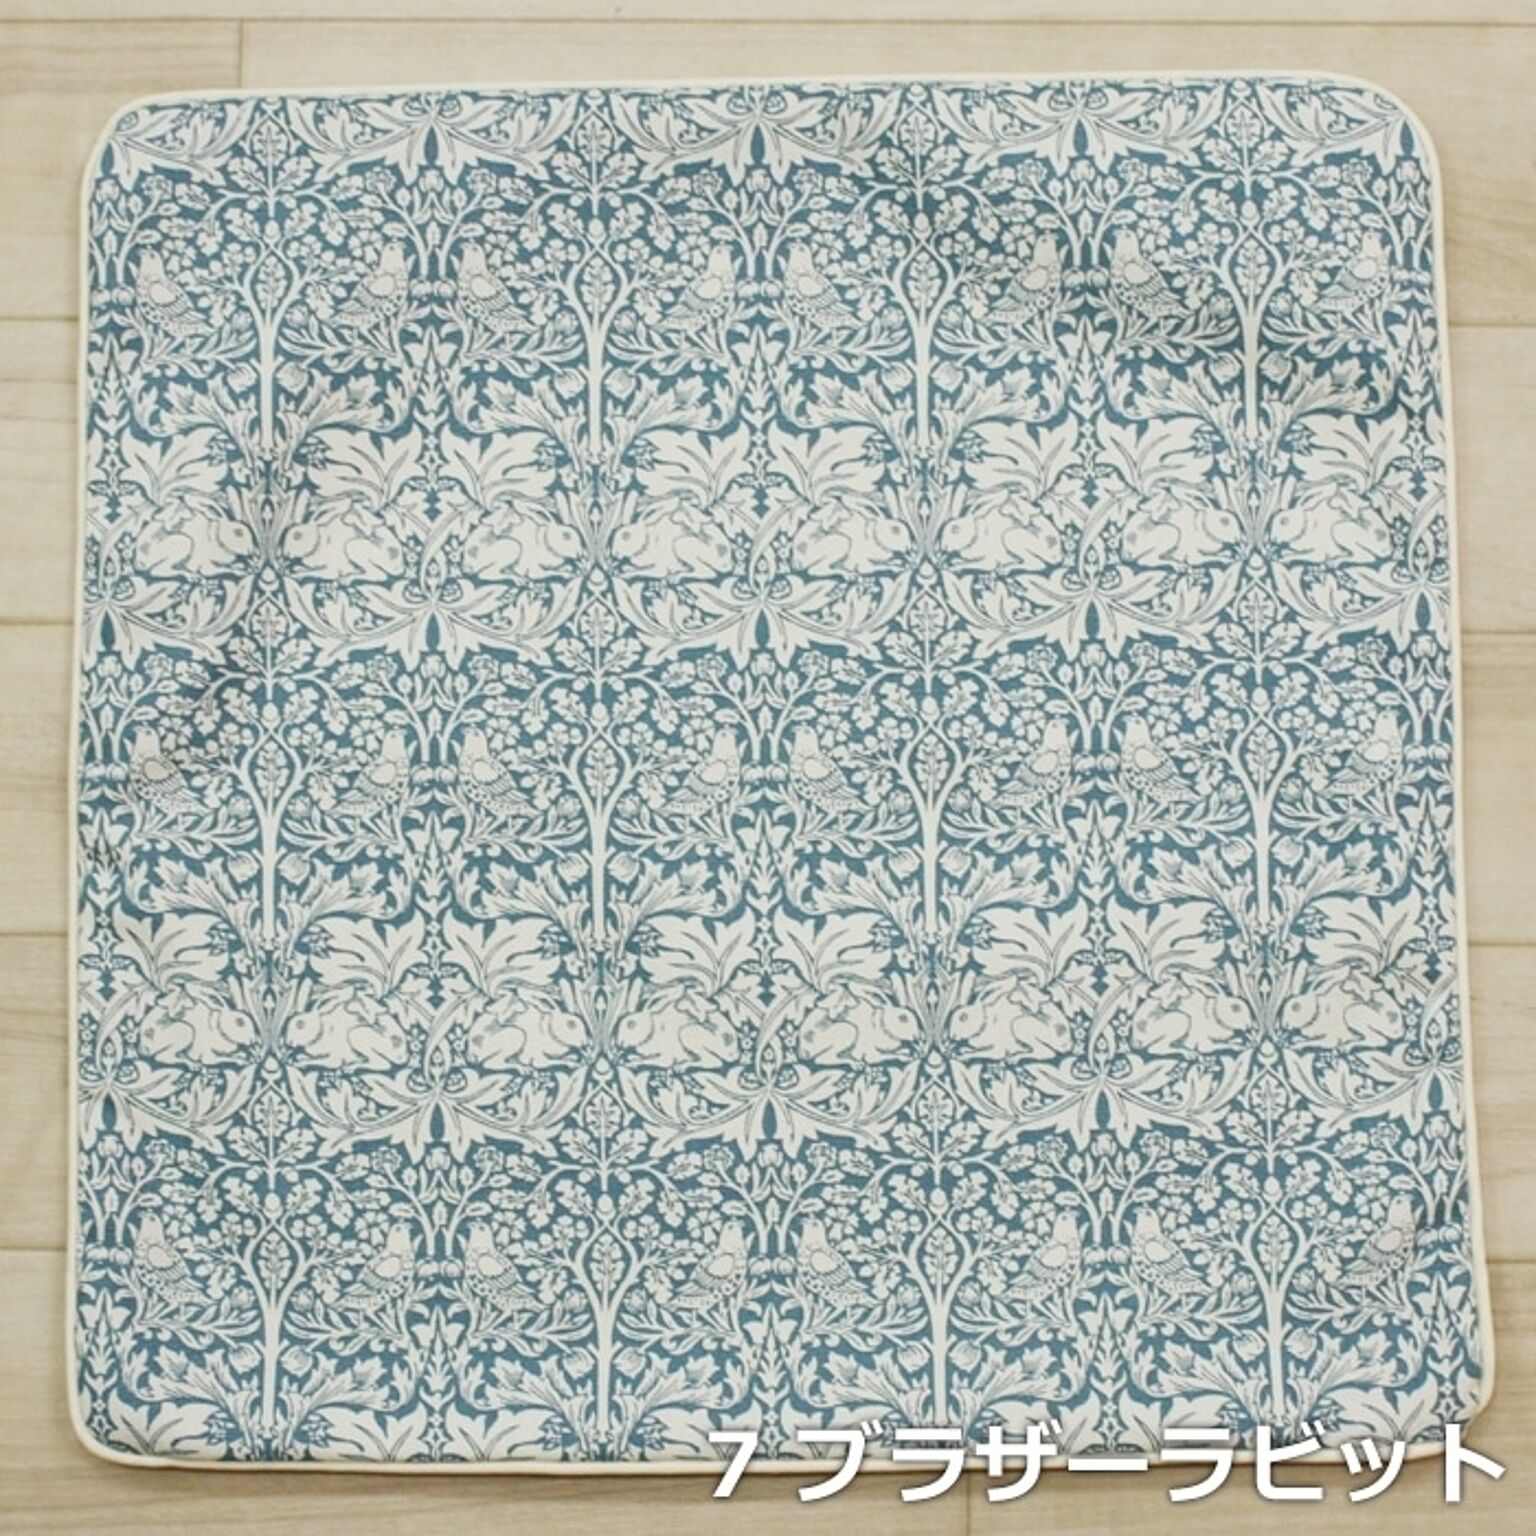 モリス柄 クッションカバー ファブリック 約45×45cm パイピング リム (Y) モリス デザイン 日本製 正方形 Morris morisu Fabric by BEST OF MORRIS